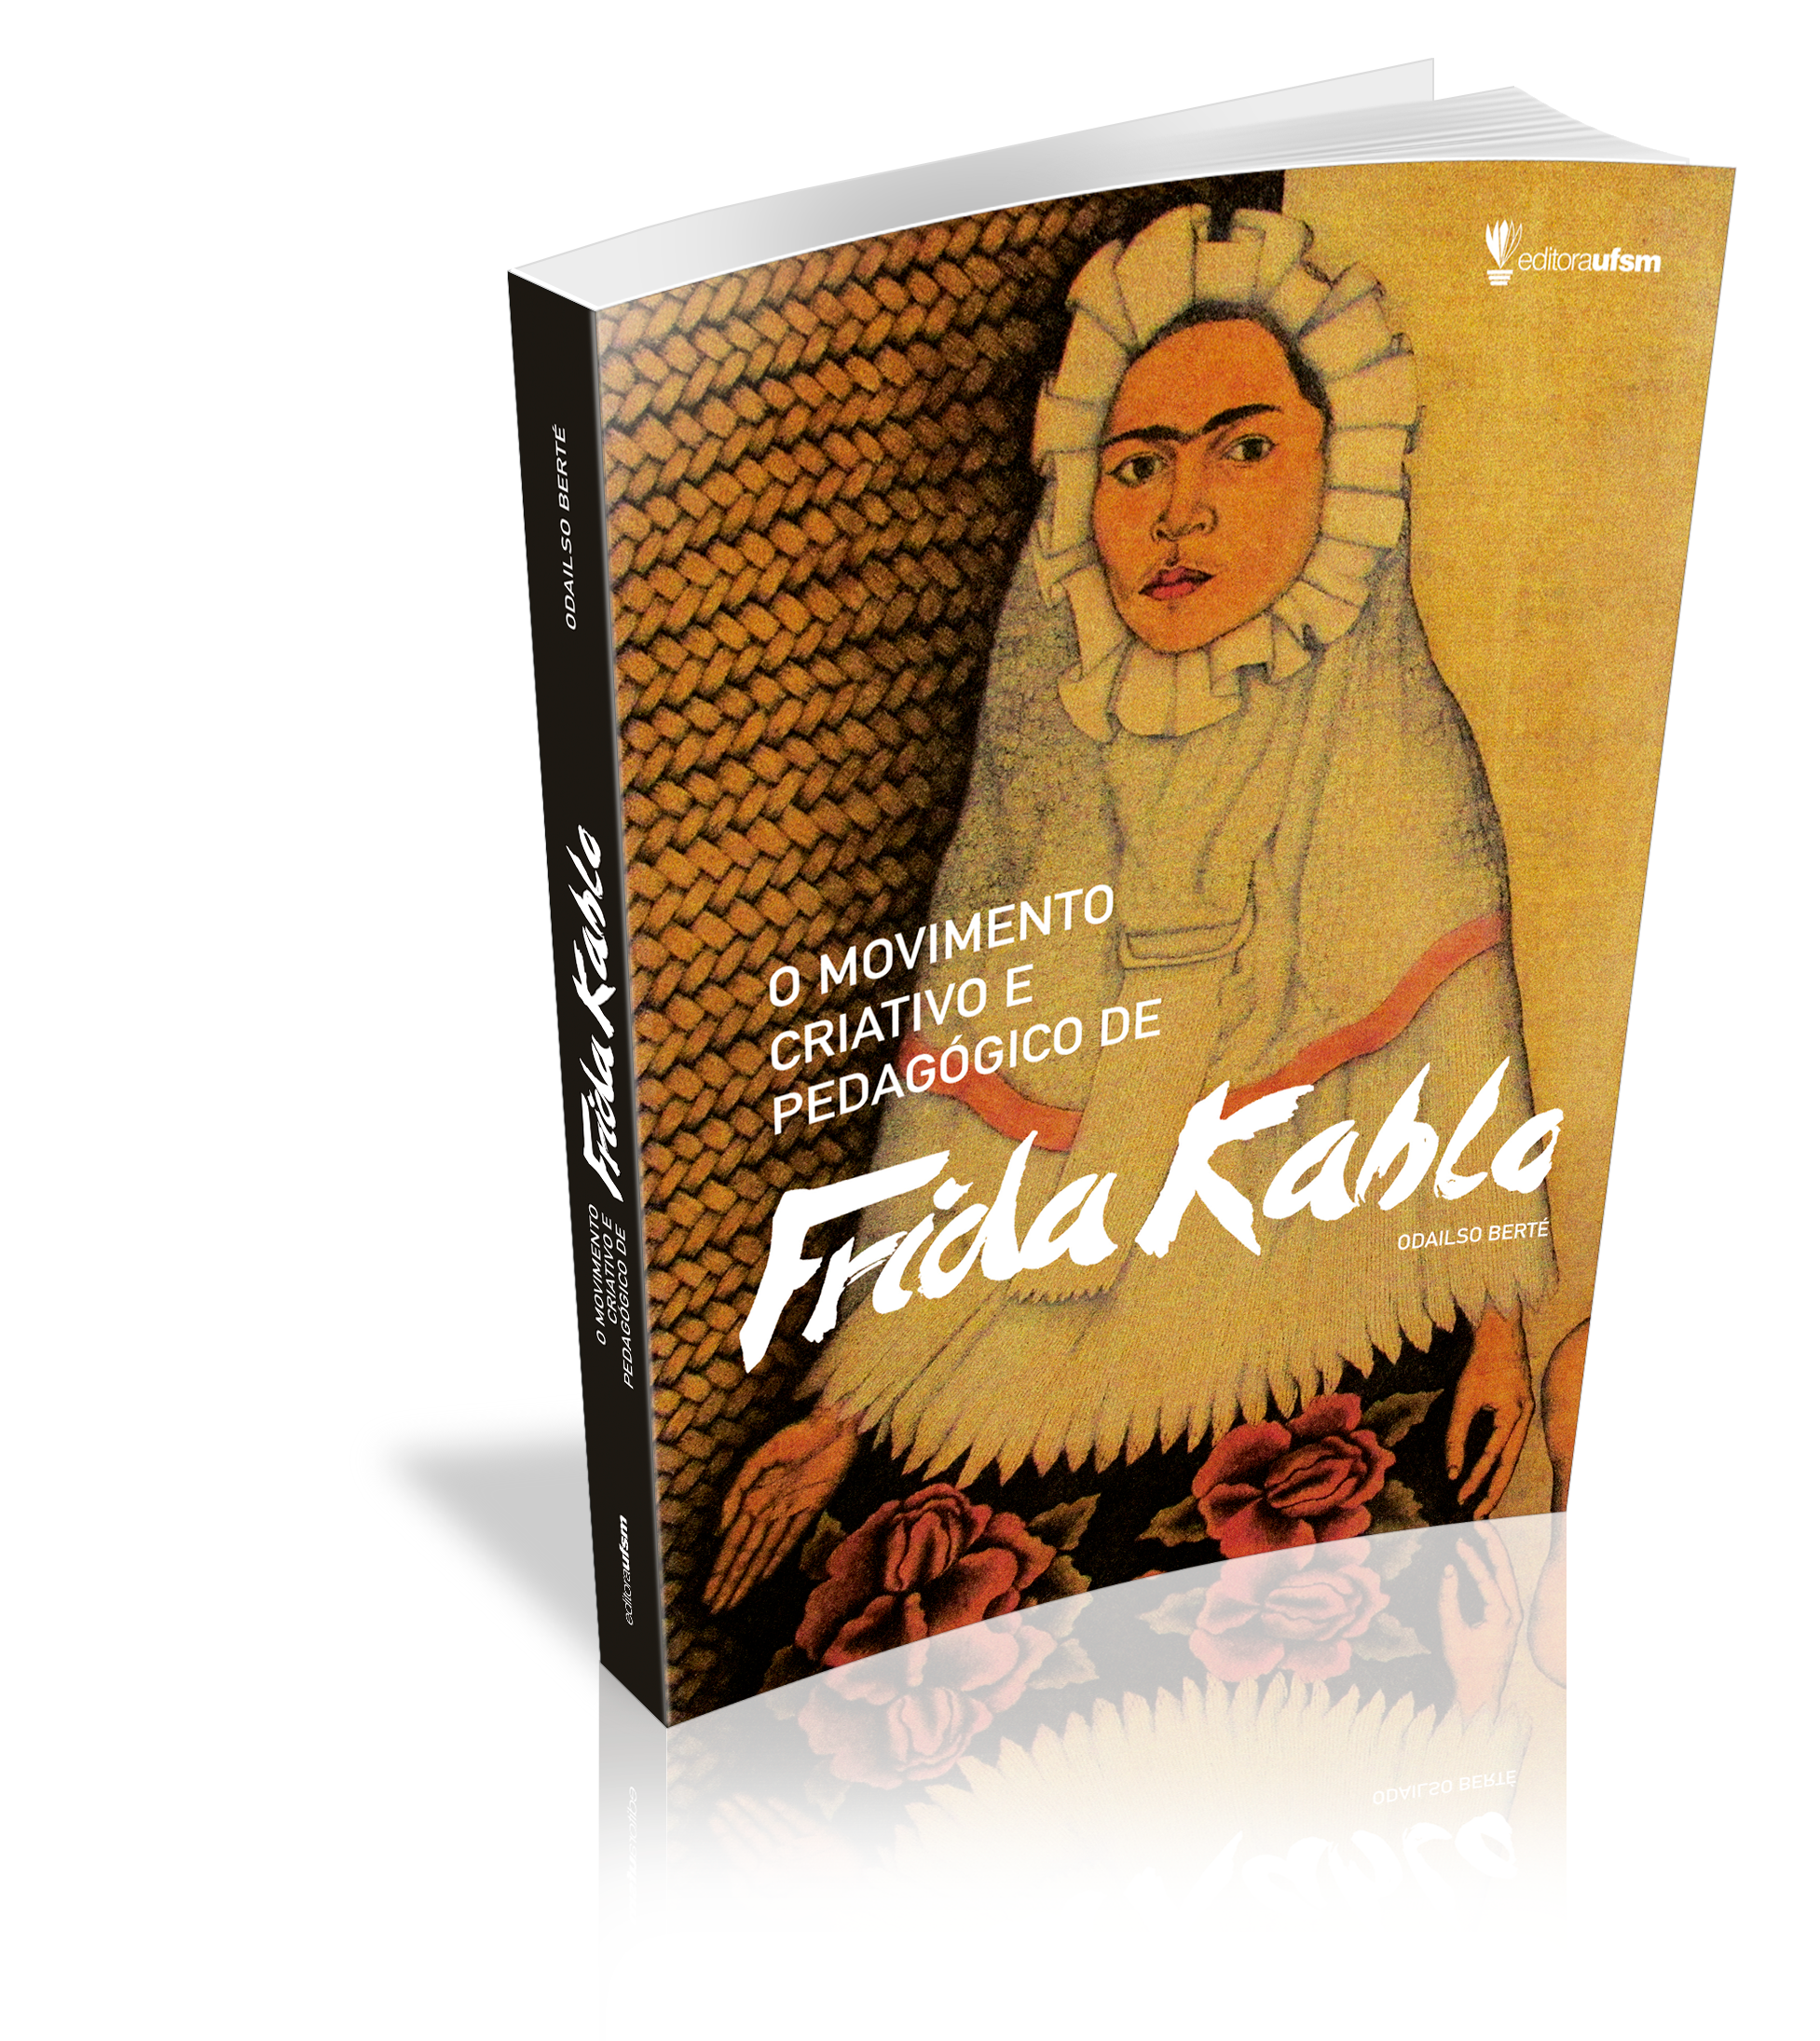 Capa do livro O movimento criativo e pedagógico de Frida Kahlo